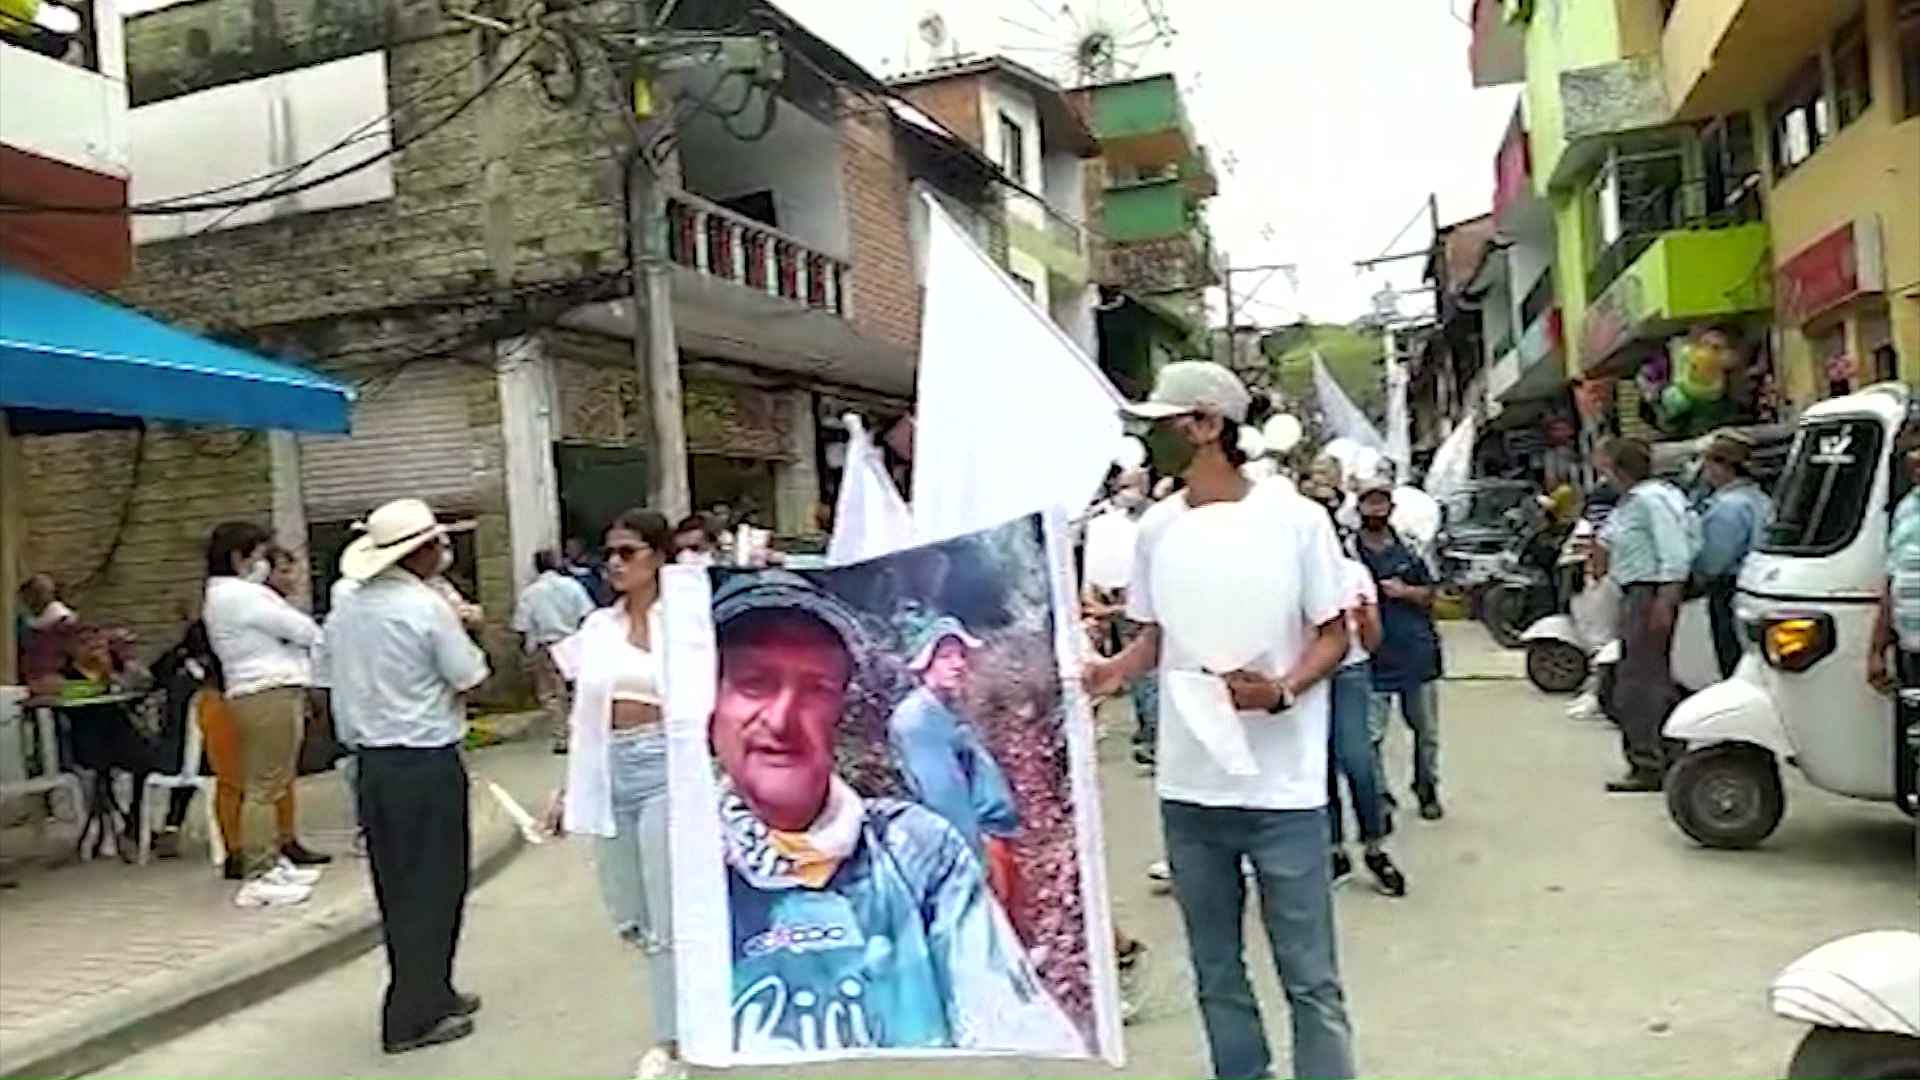 Marcha para reclamar búsqueda de líderes desaparecidos